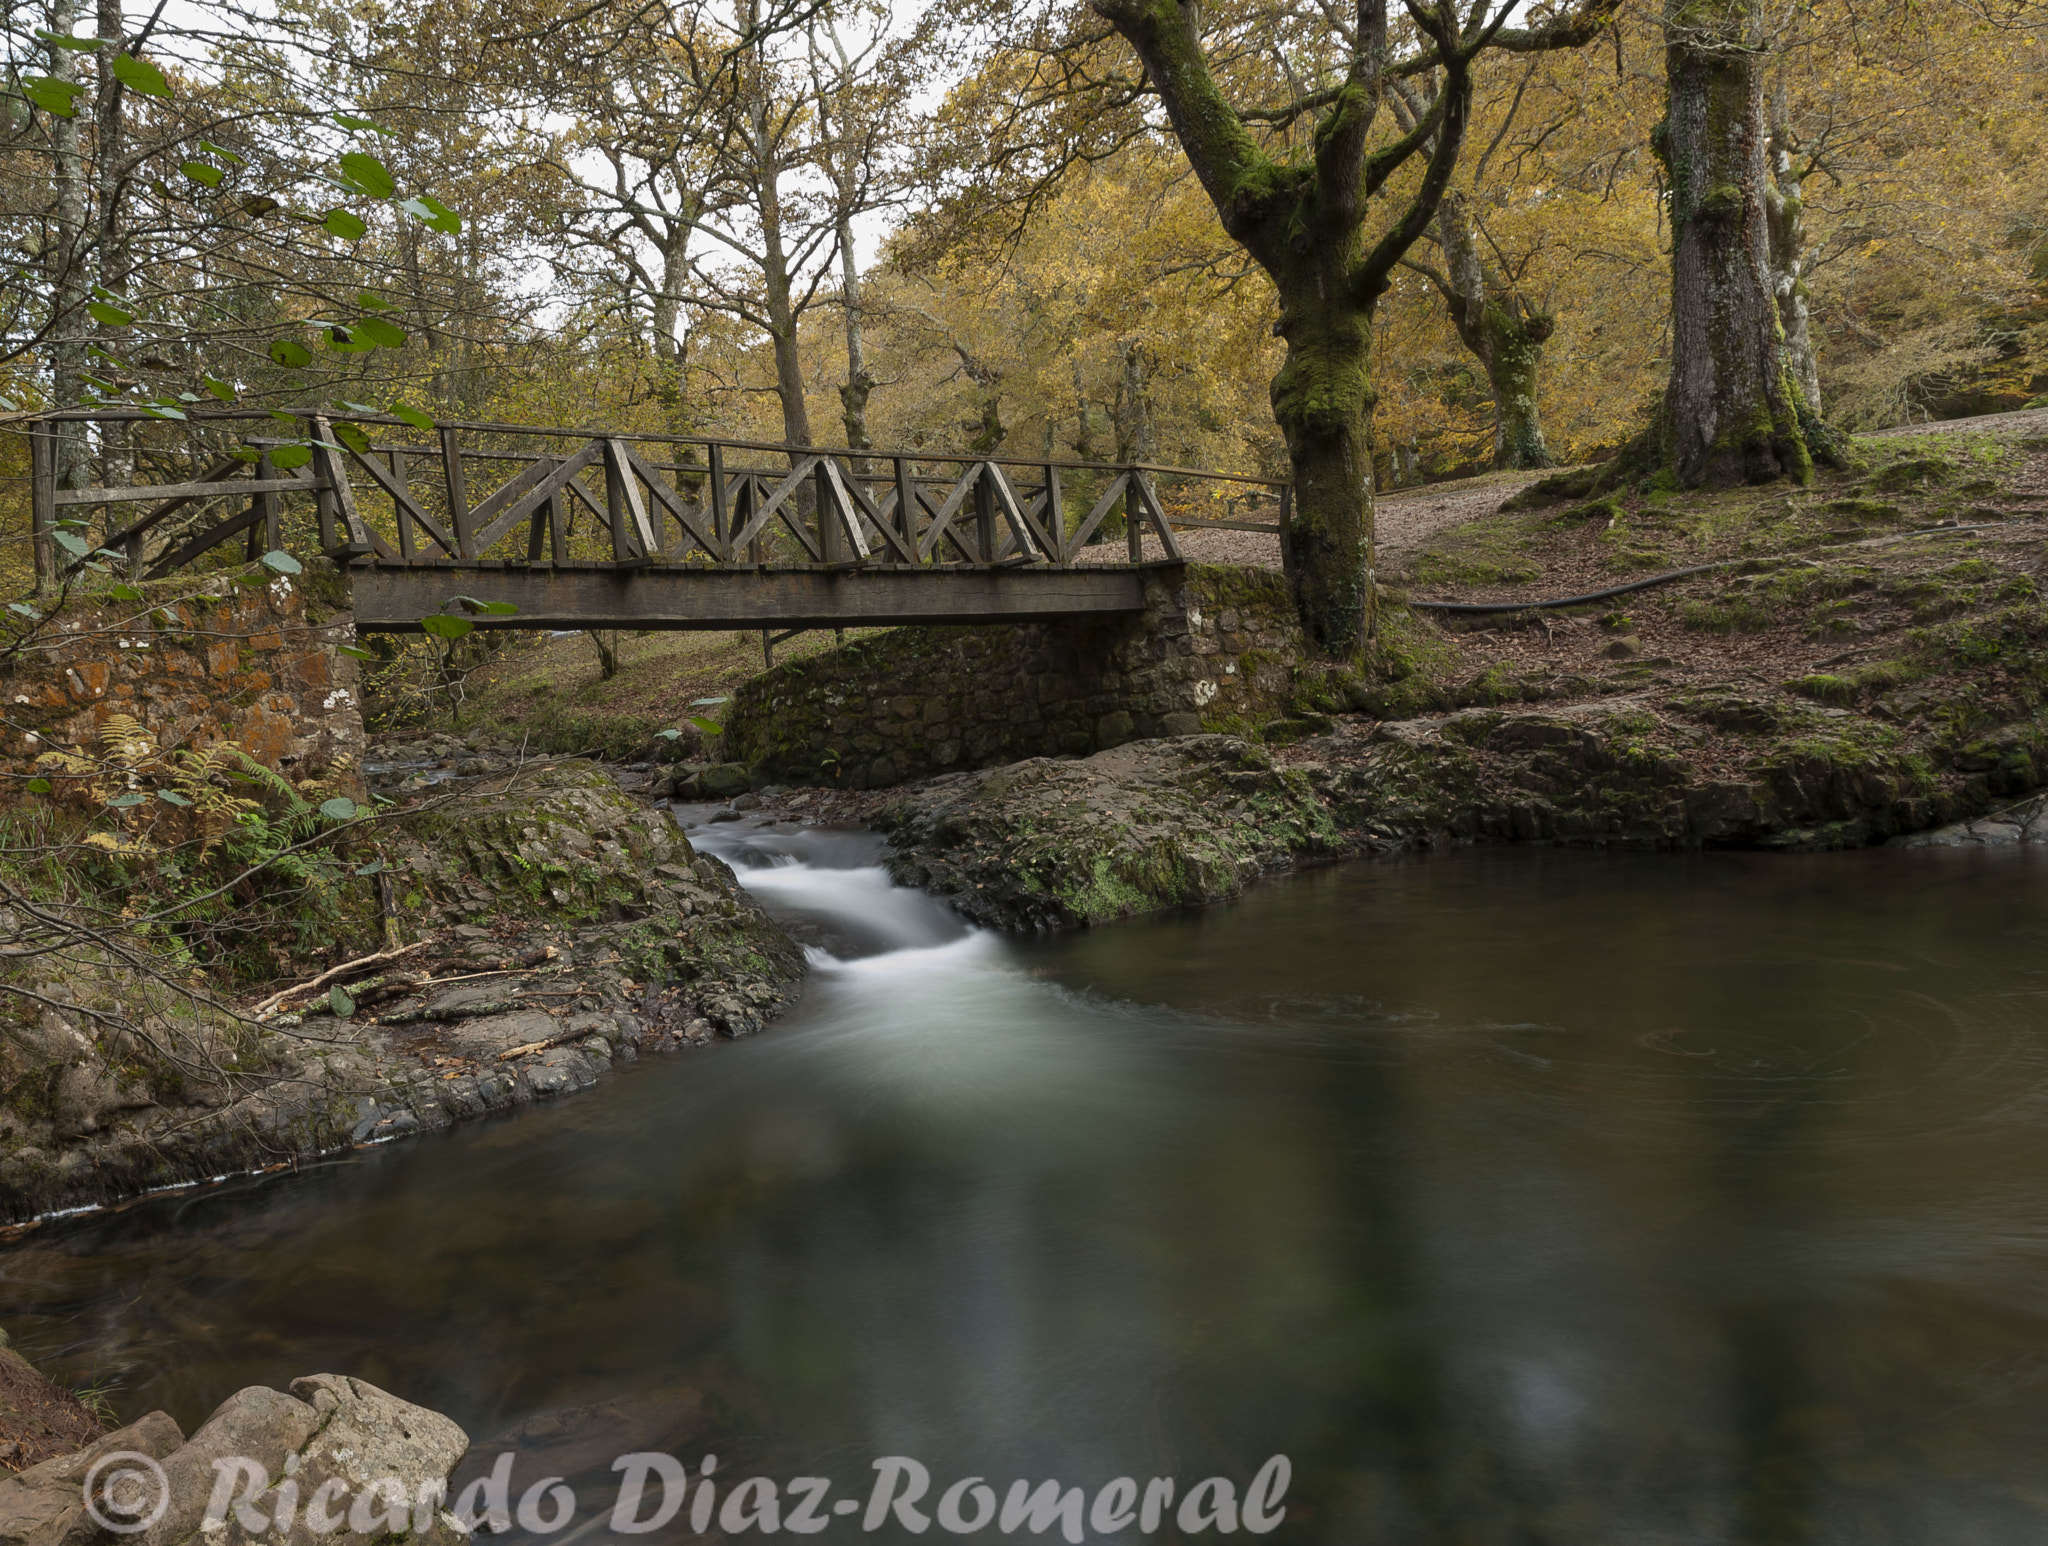 Nikon D700 sample photo. Los puentes de otoño photography